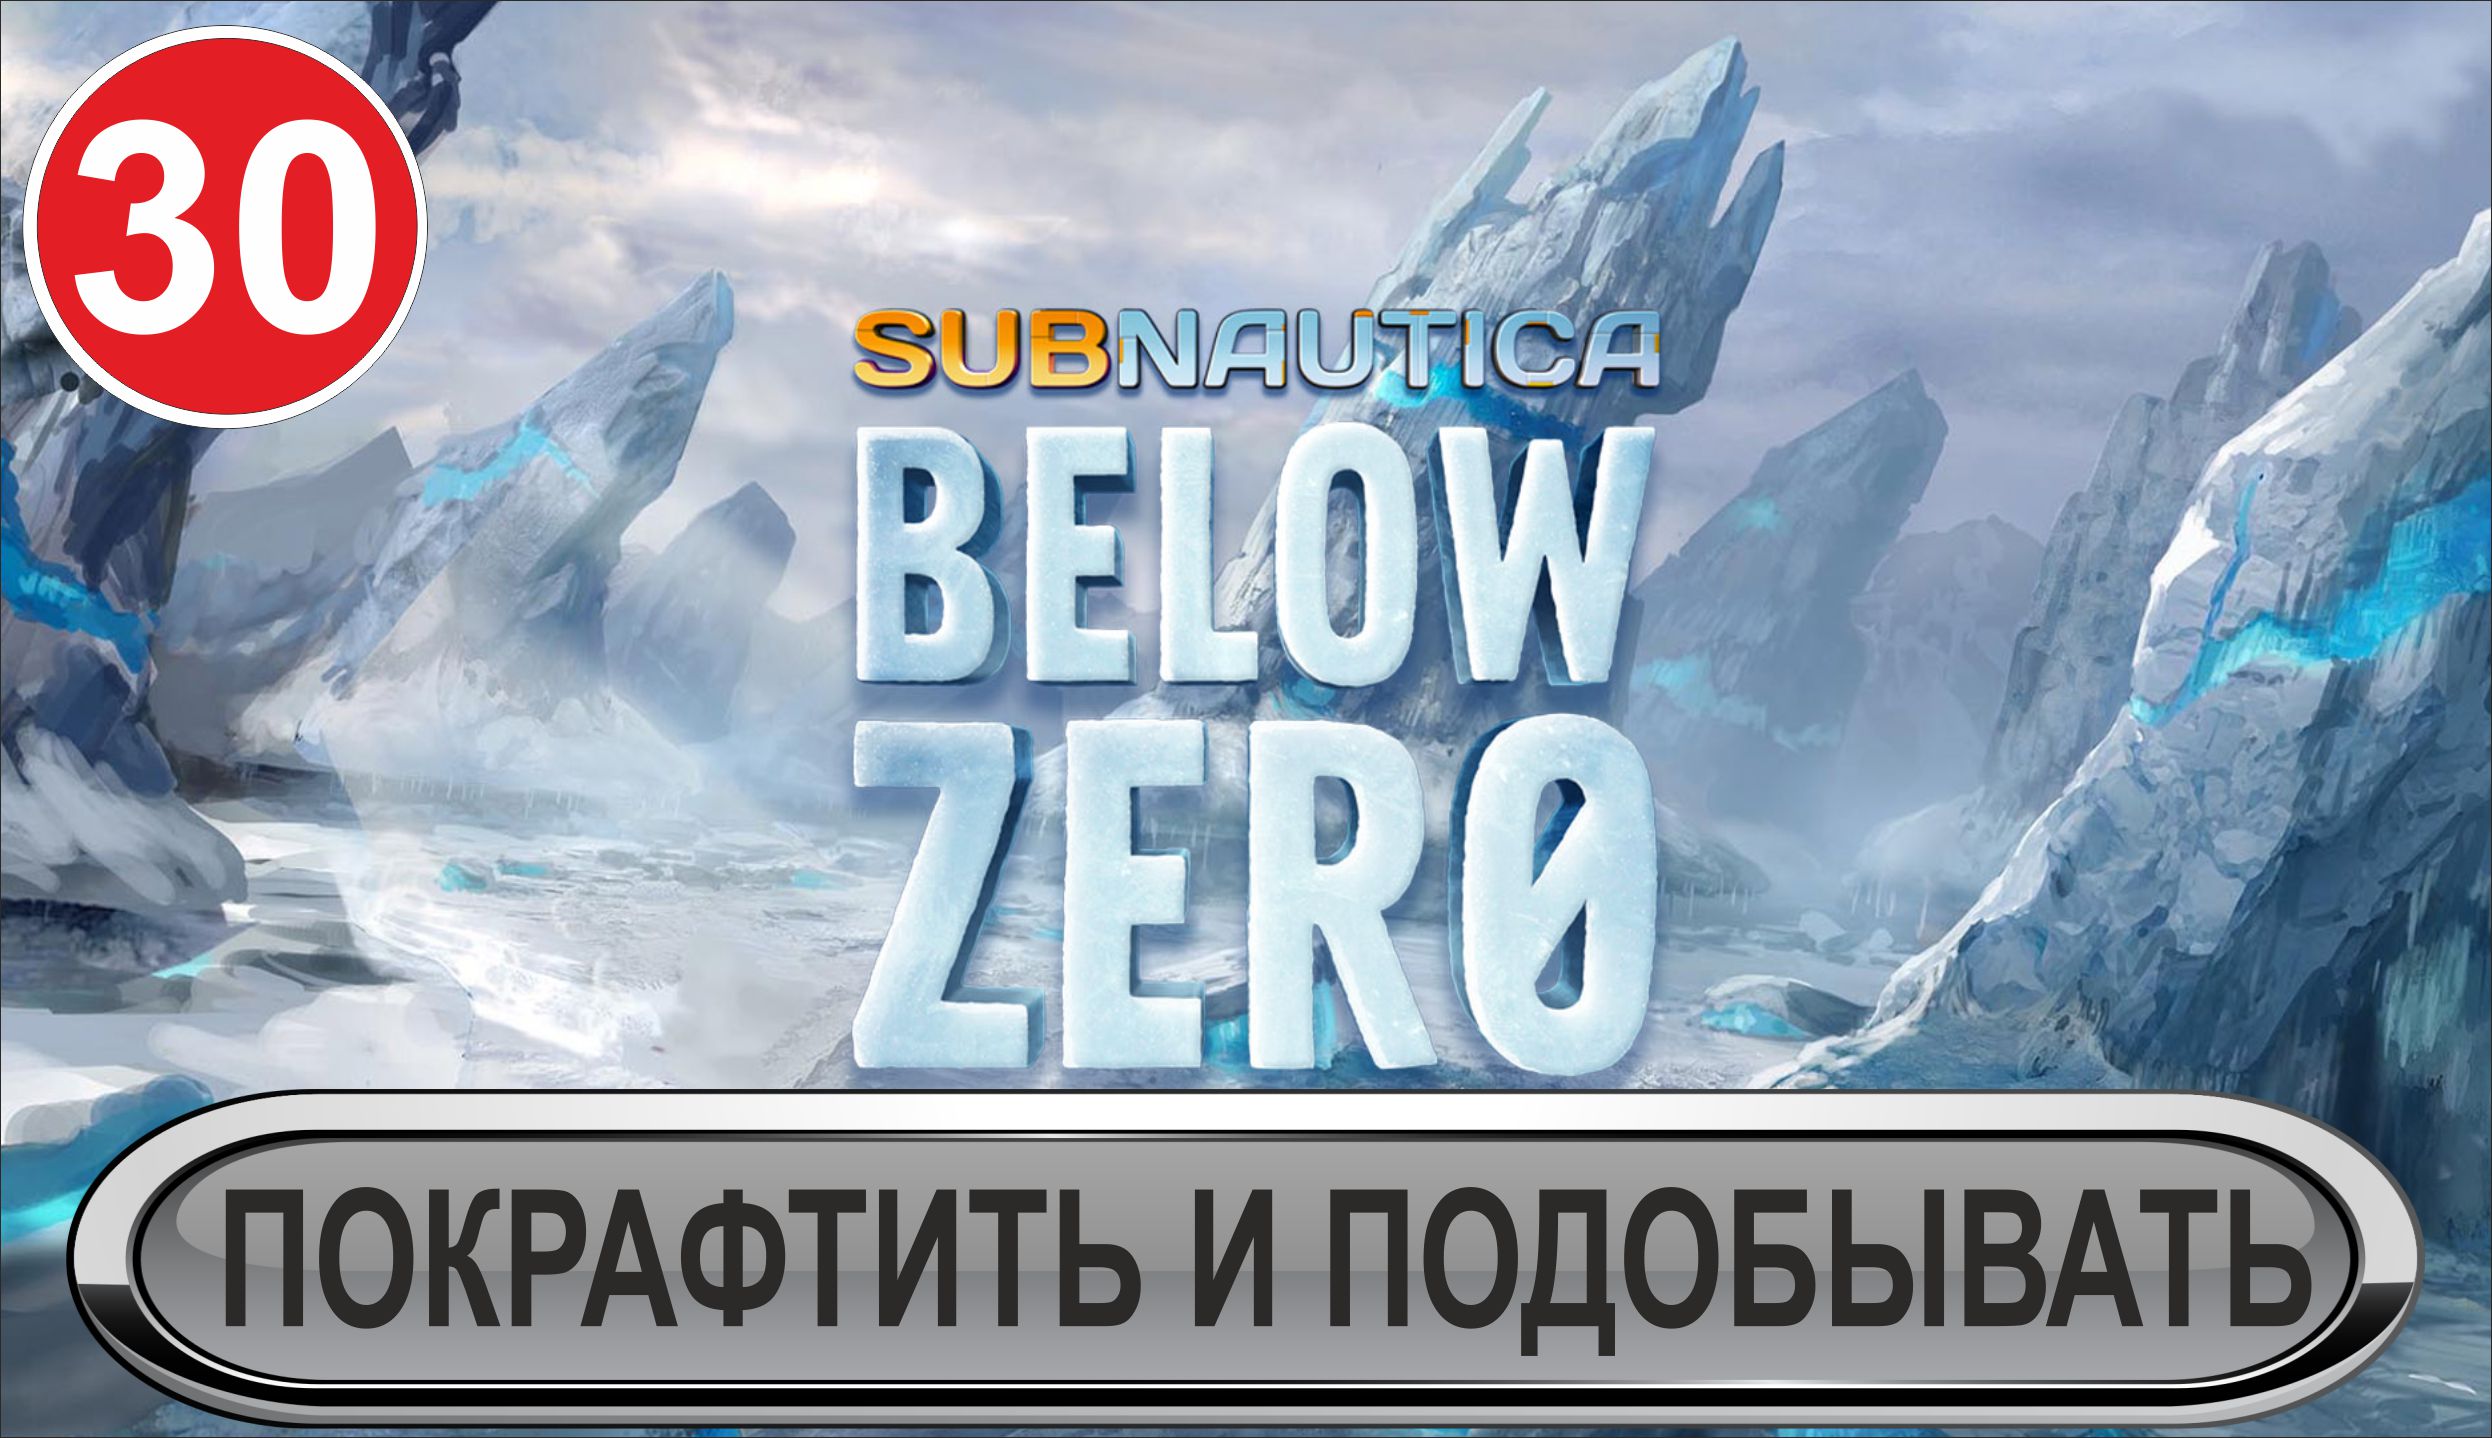 Subnautica: Below Zero - Покрафтить и подобывать